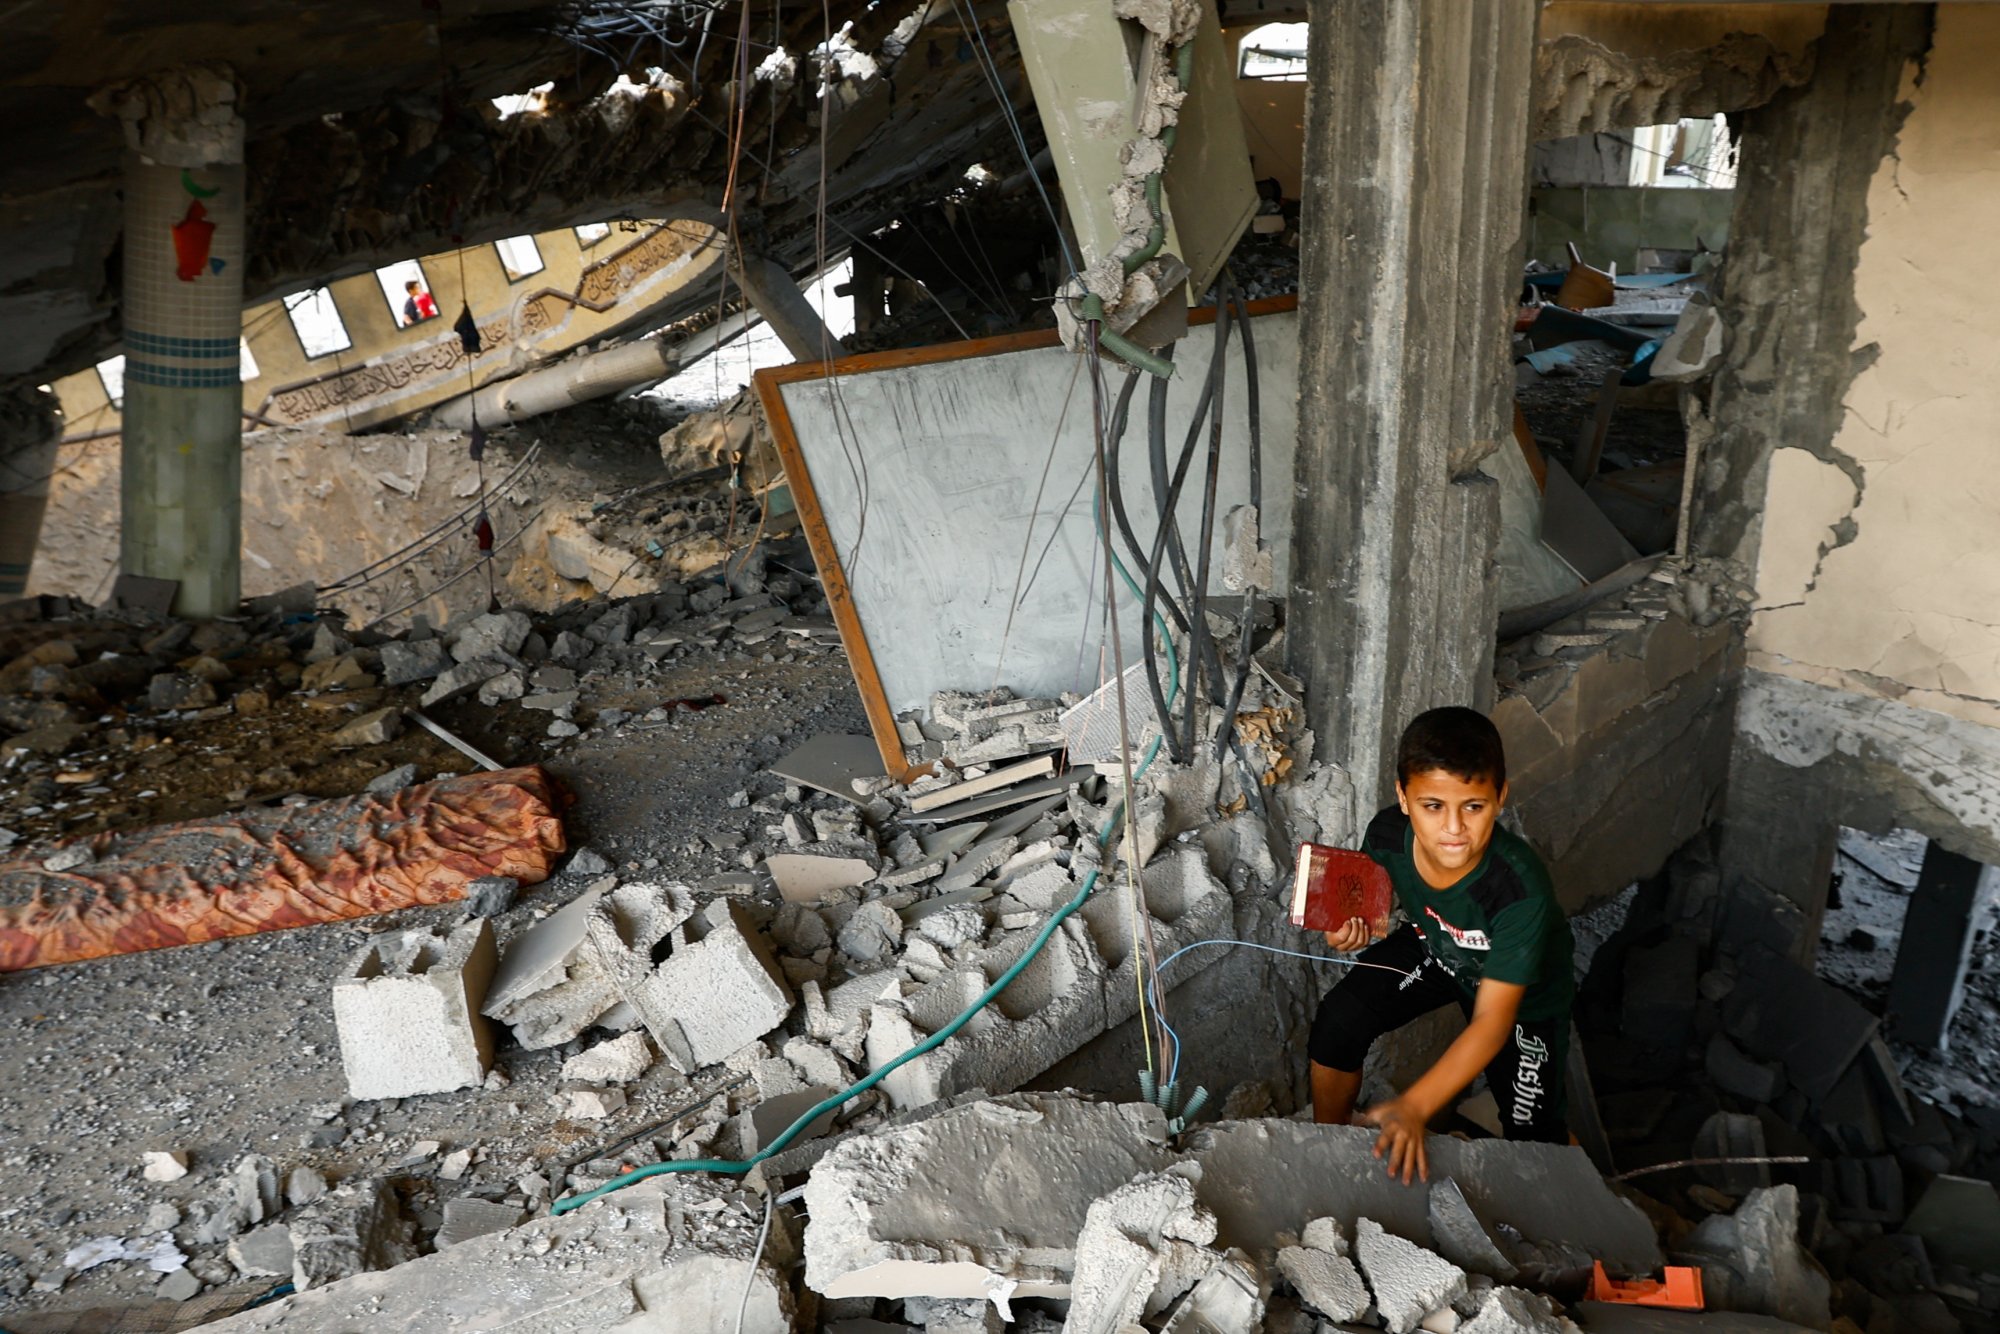 ΟΗΕ: Καταγγέλλει το Ισραήλ για παραβάσεις σε βάρος παιδιών - Στην ίδια λίστα με Χαμάς, ISIS και Μπόκο Χαράμ